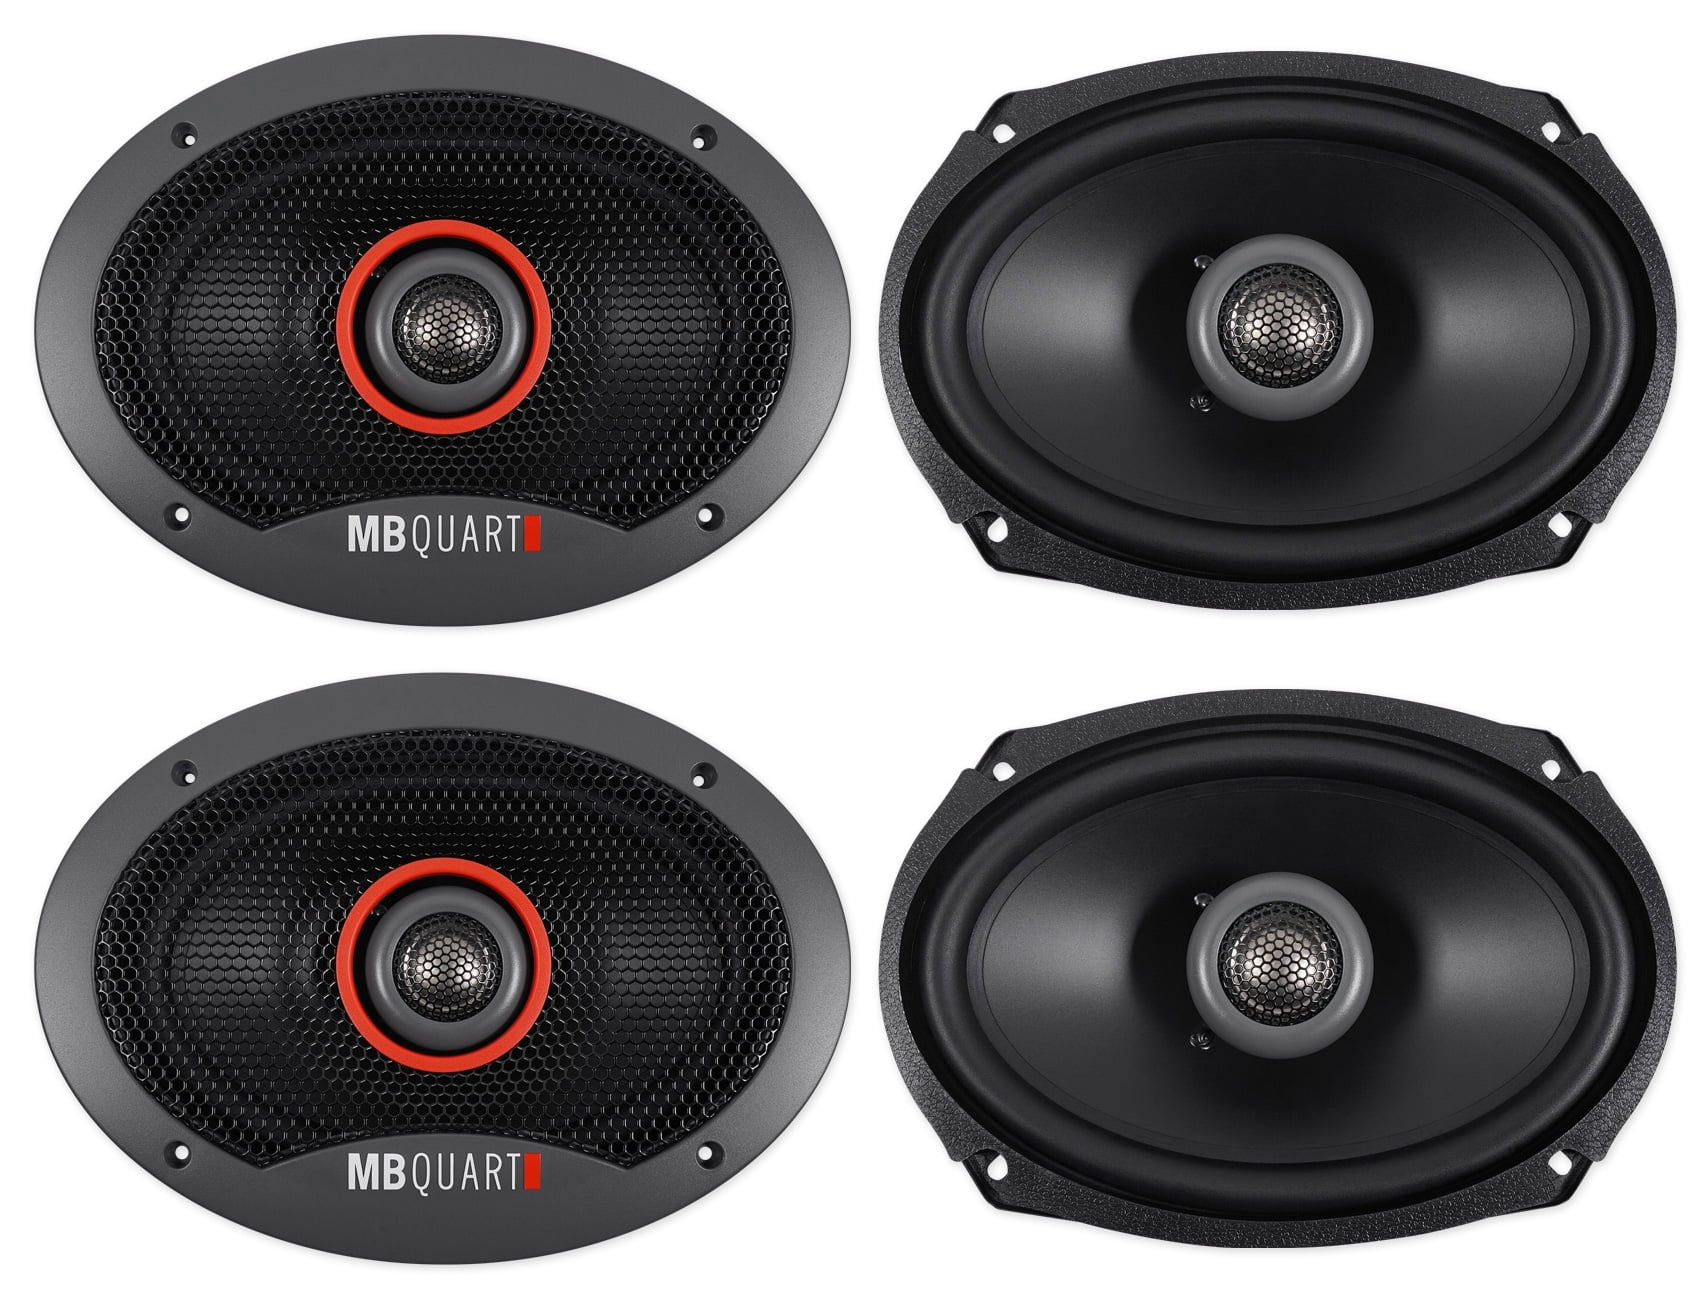 mb quart speakers